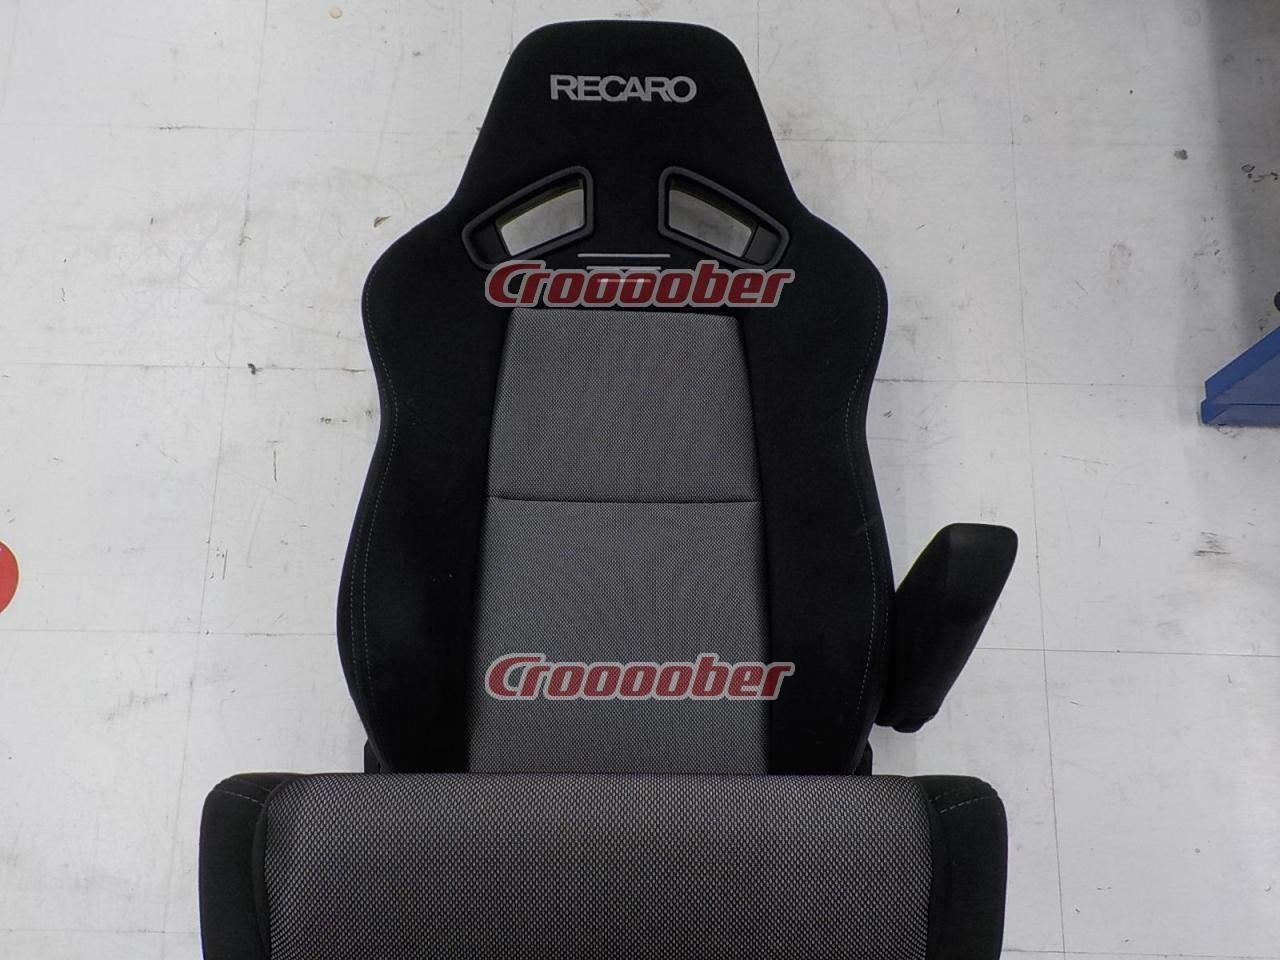 RECARO SR-7F GK100 | Reclining Seats(RECARO) | Croooober